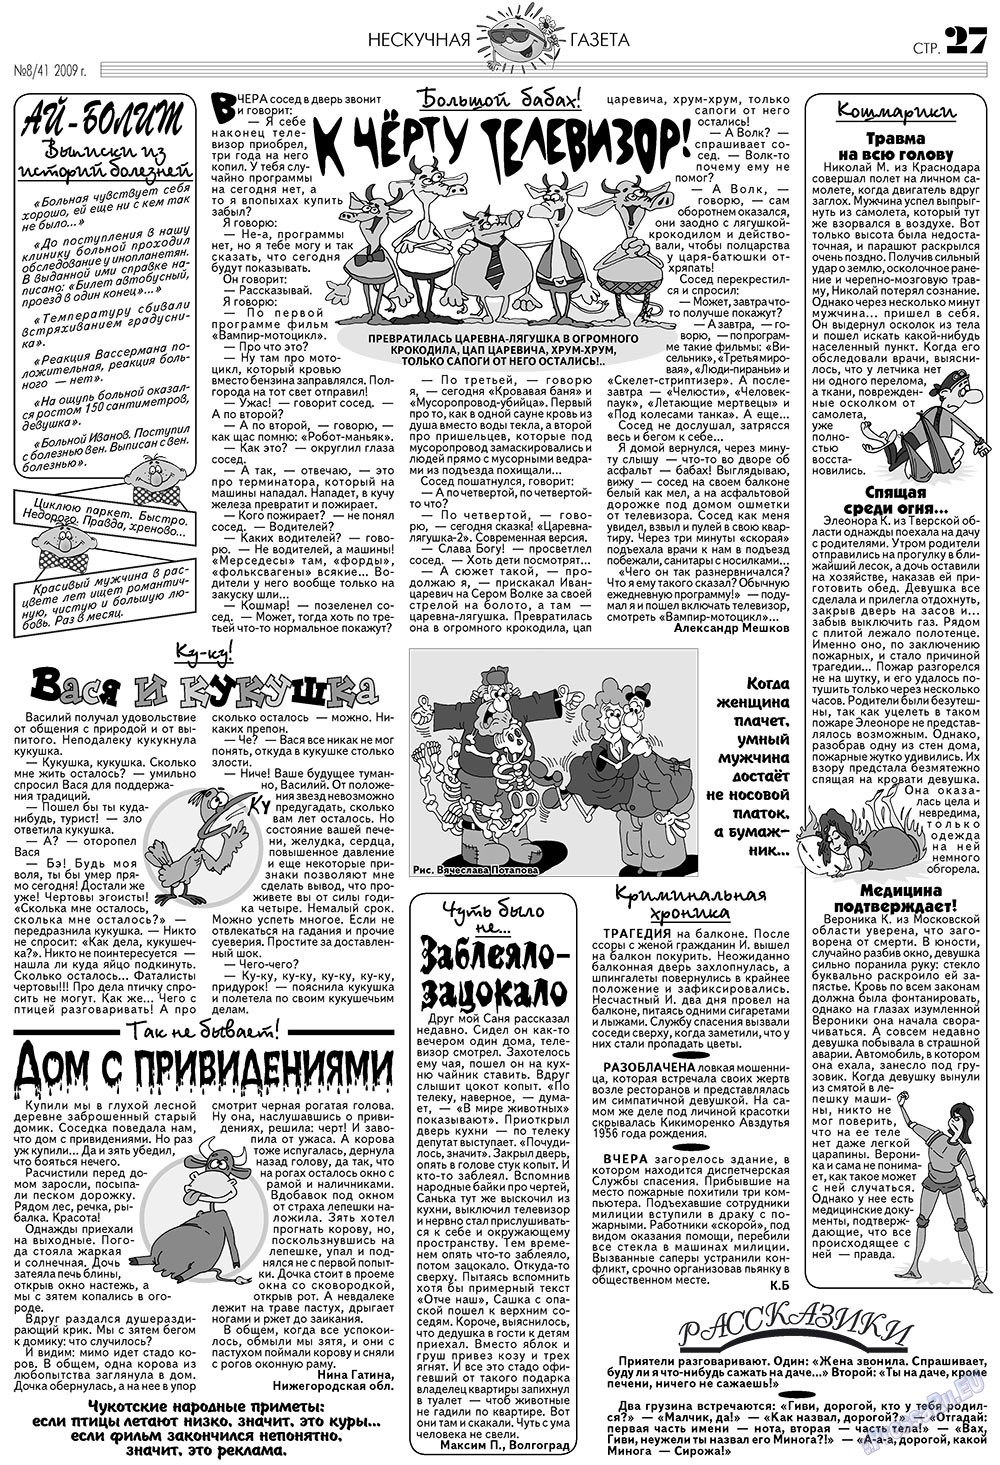 Нескучная газета (журнал). 2009 год, номер 8, стр. 23